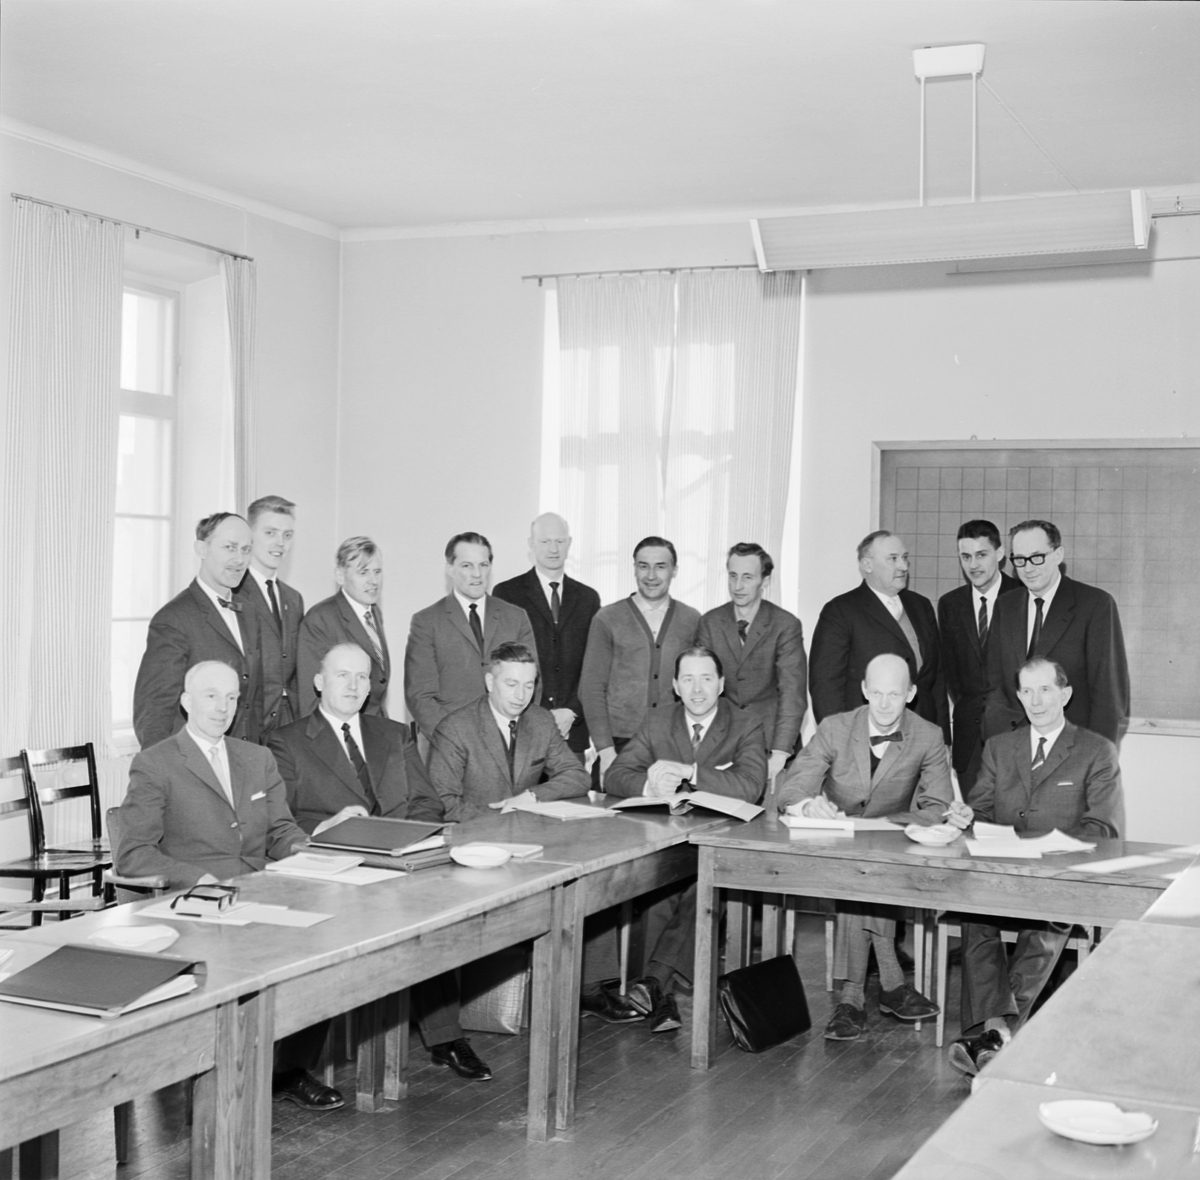 Lantbrukshögskolan, "forskning och praktik studerar hand i hand specialiserat jordbruk", Uppsala 1963